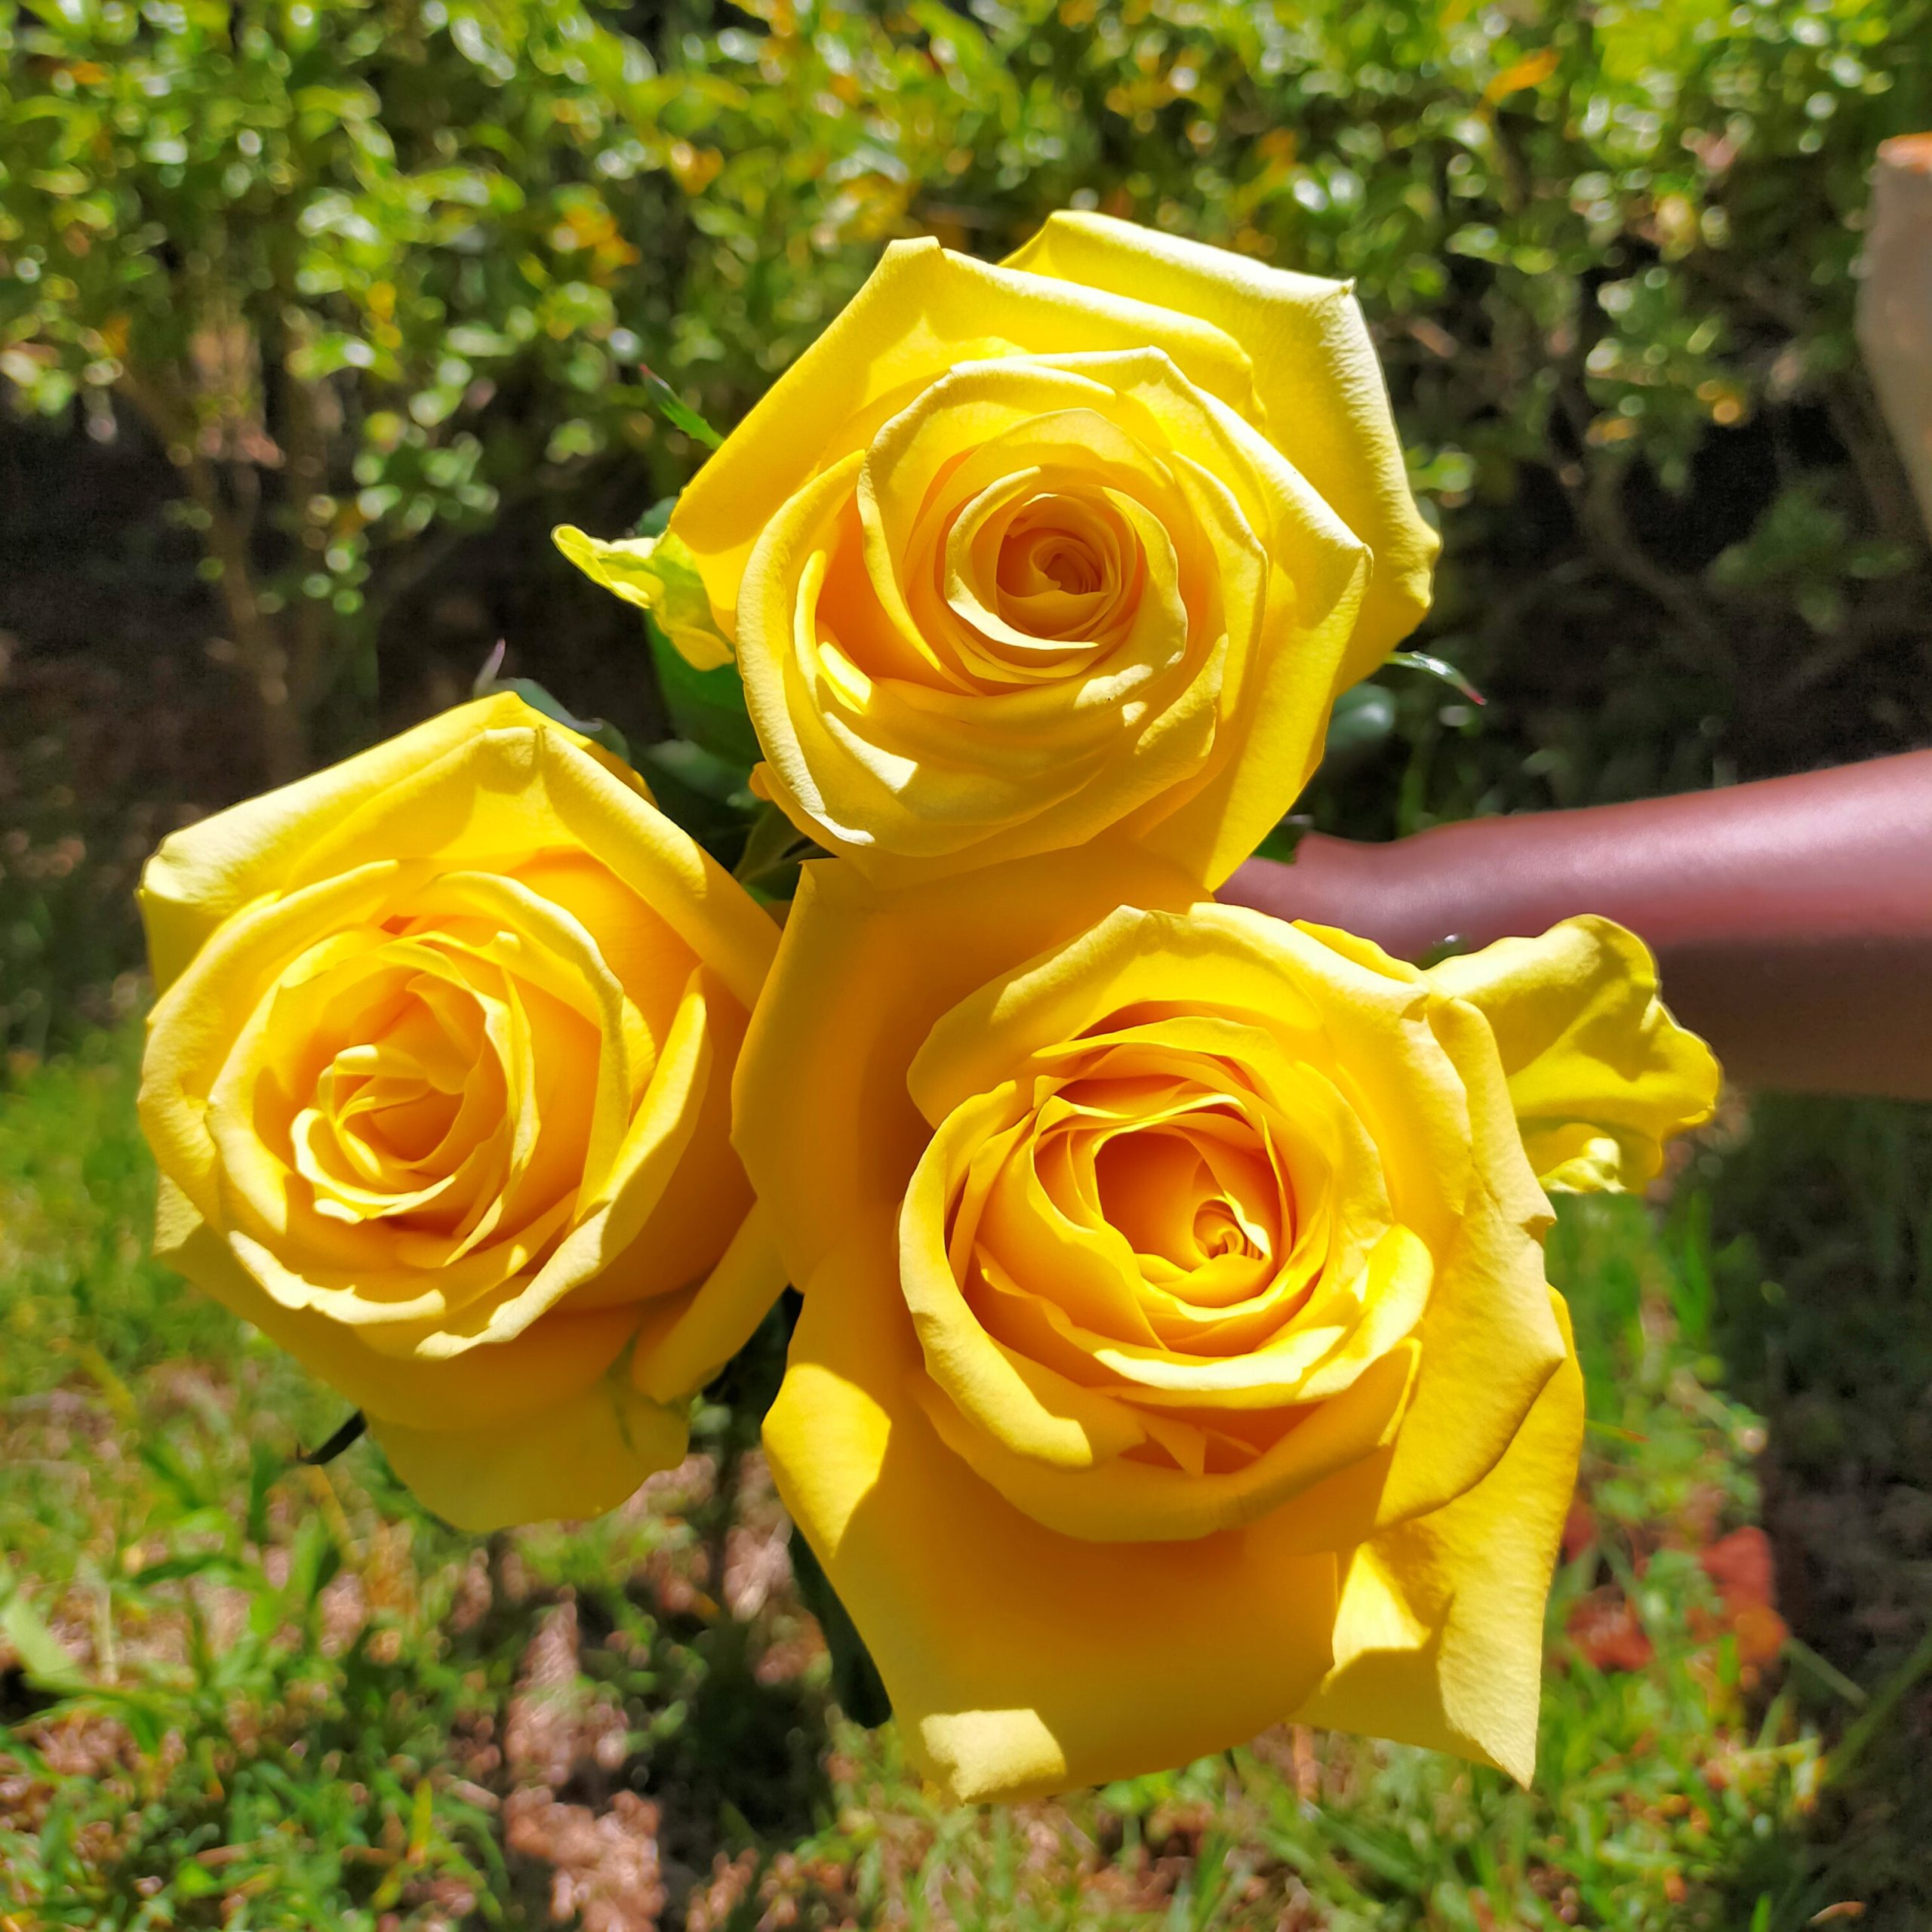 Rose yelloween